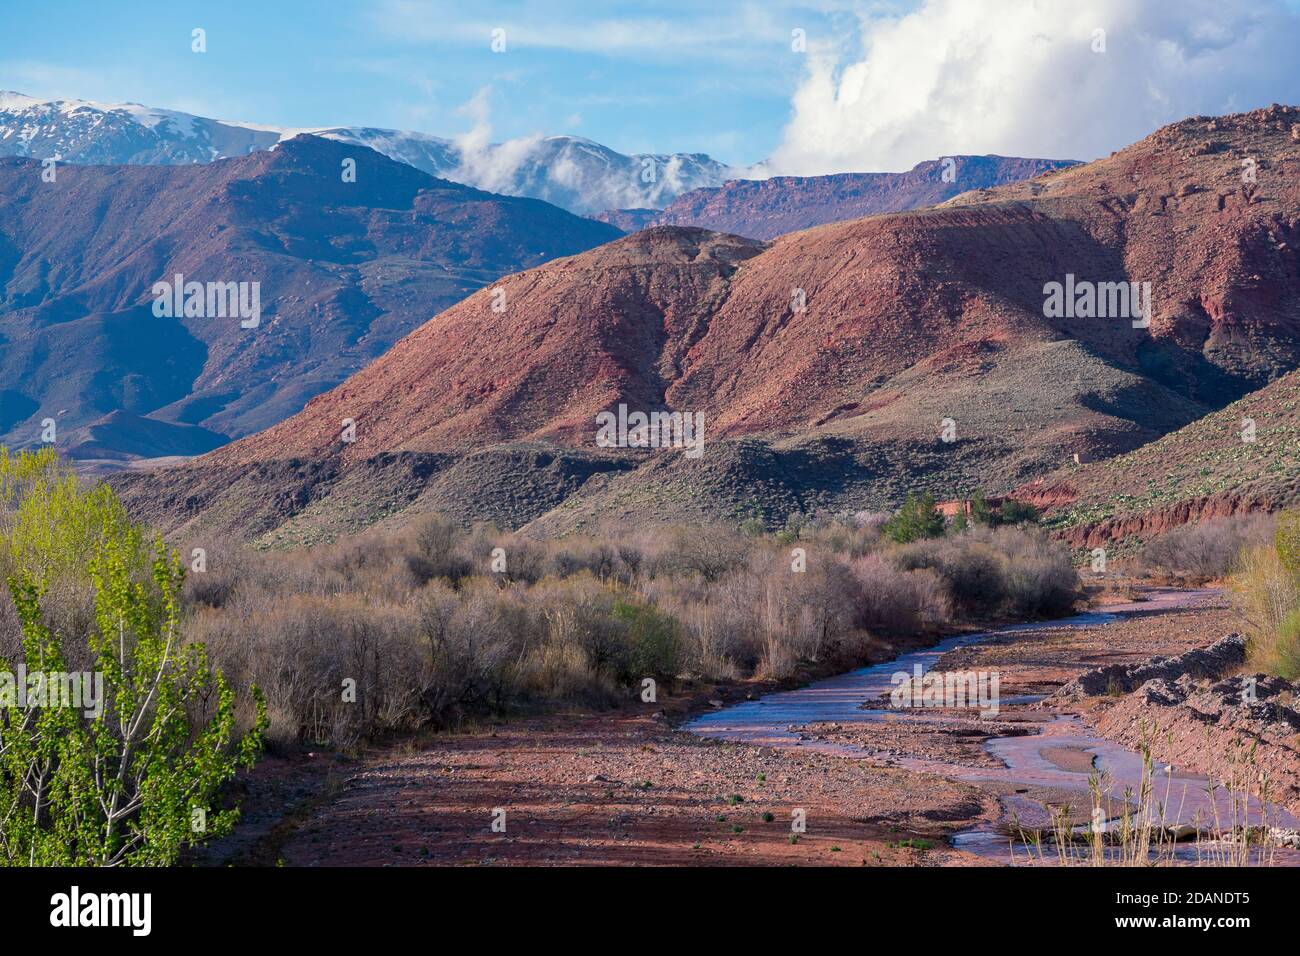 Tagsüber Weitwinkel Aufnahme der schönen Landschaft von schneebedeckten Bergen und Büschen und ein riachuelo im Tal. Atlas, Marokko. Stockfoto